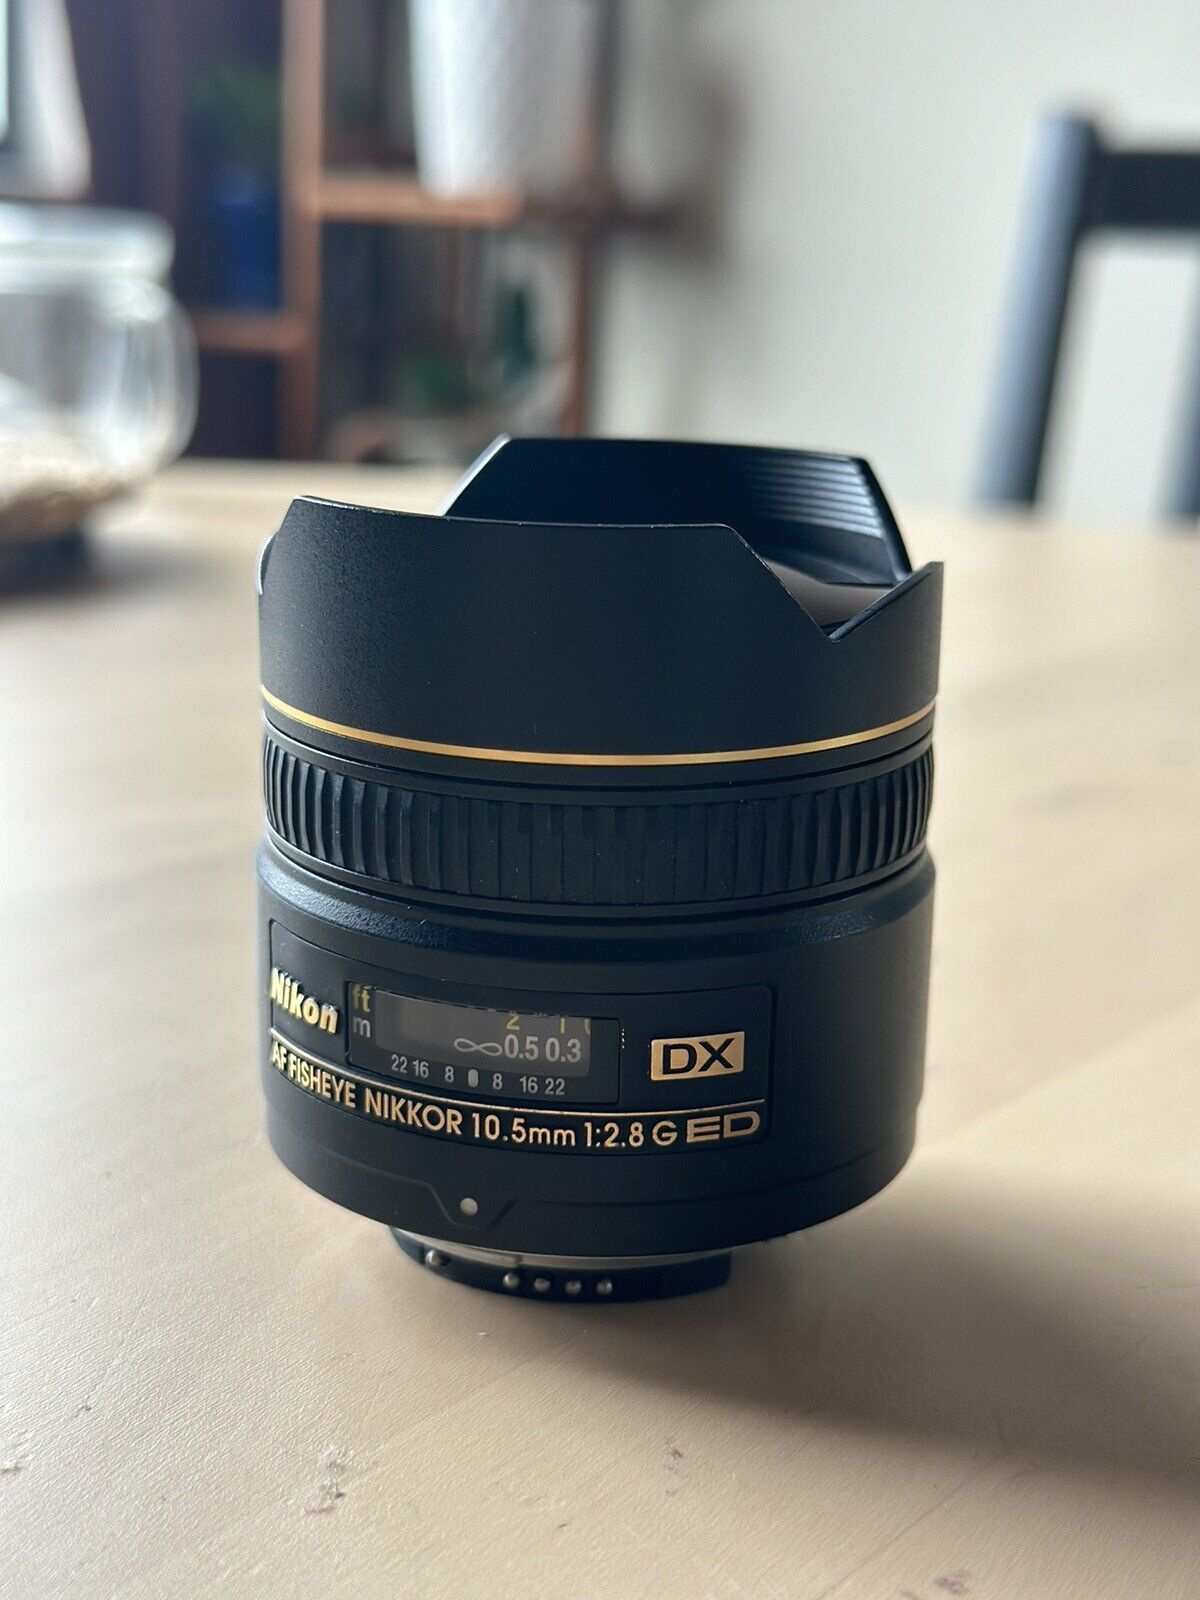 Nikon AF DX Fisheye-Nikkor 10.5mm f/2.8G ED Lens With Soft Case